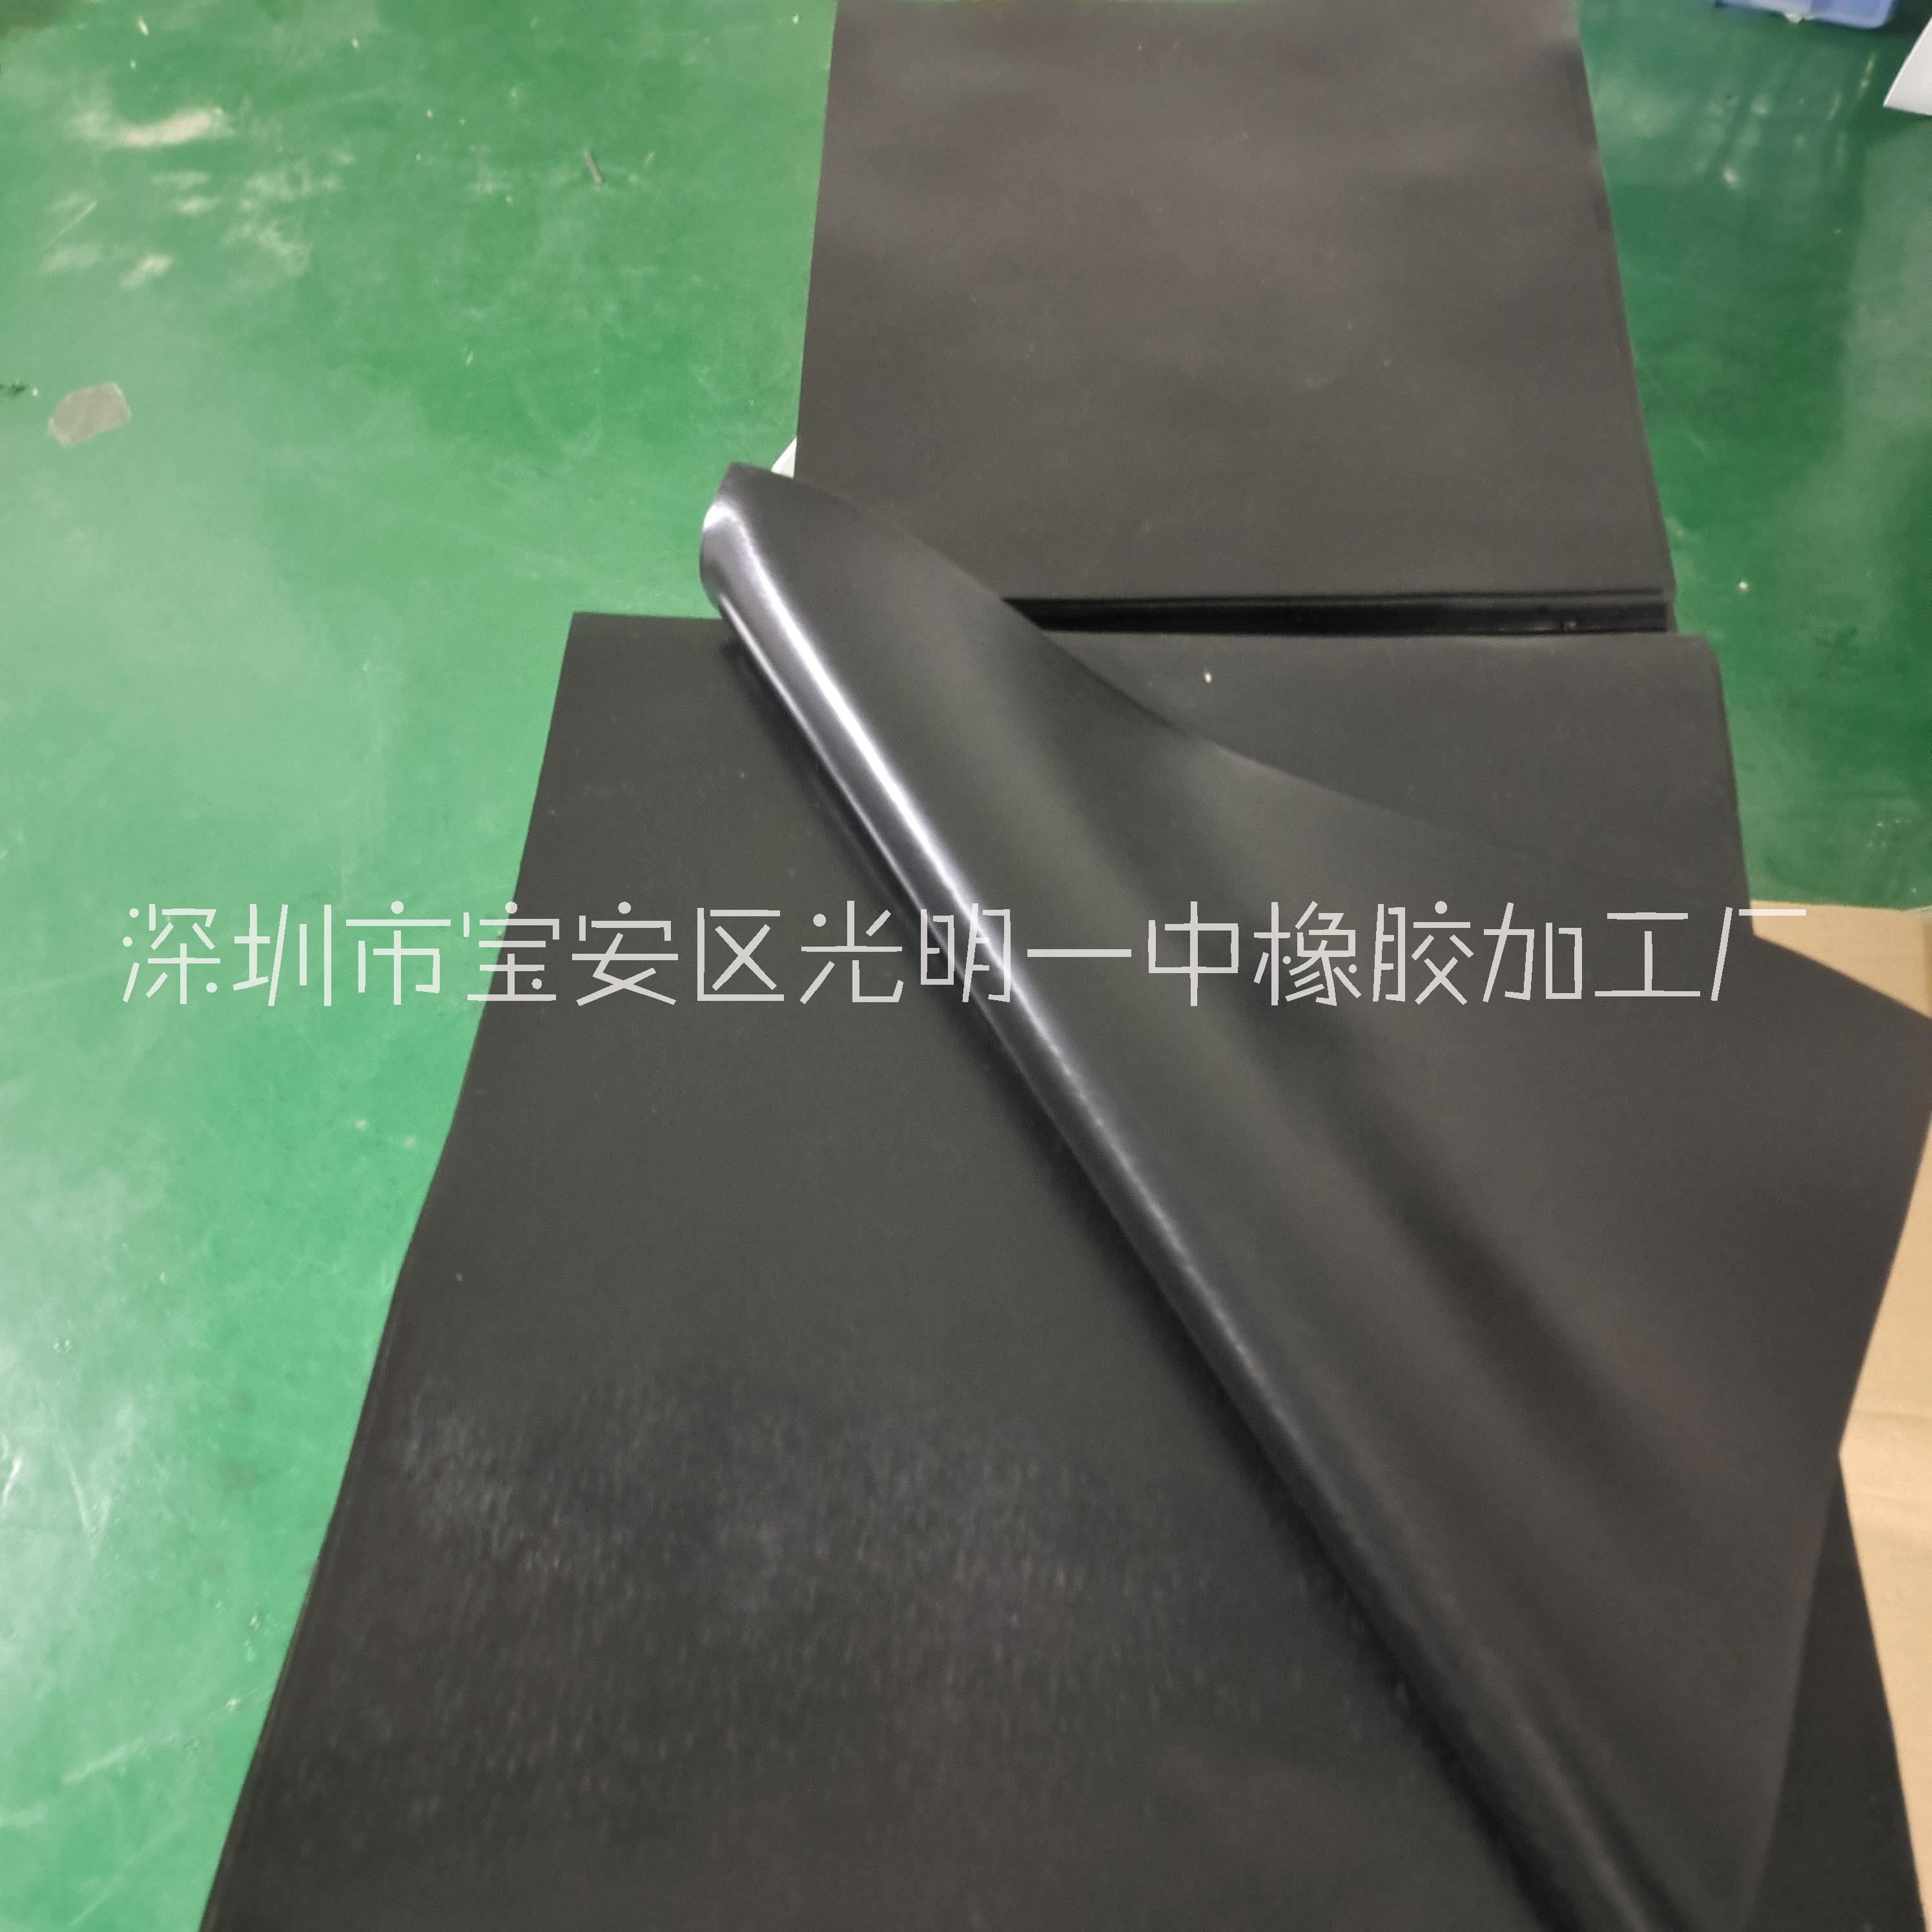 供应黑色80度网格硅胶板  格纹硅胶片橡胶片  70度网格硅胶板橡胶板